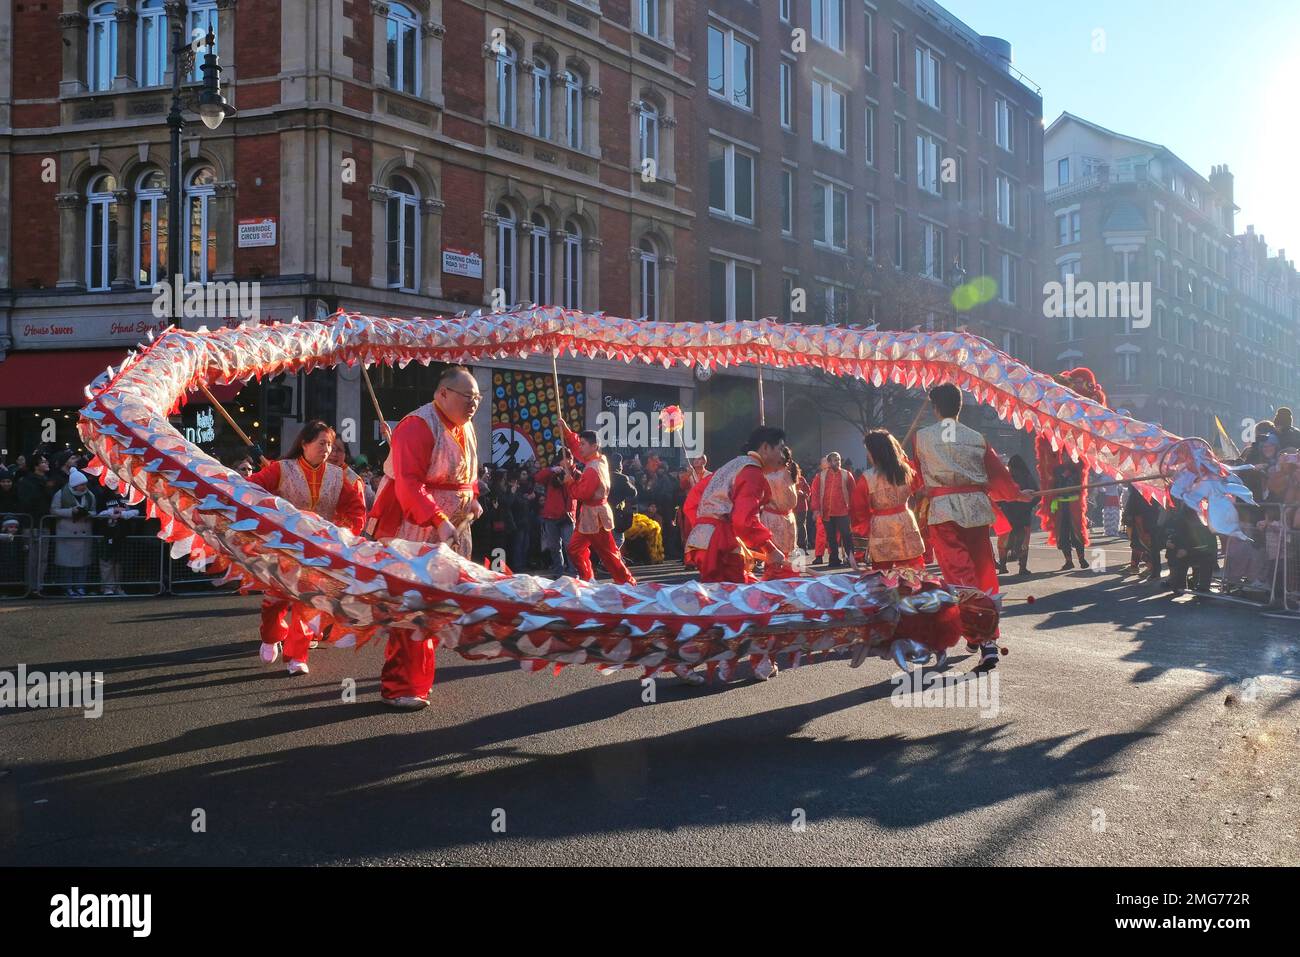 Londra, Regno Unito. I ballerini del drago si intrecciano per le strade durante la sfilata di Capodanno cinese che celebra l'anno del coniglio. Foto Stock